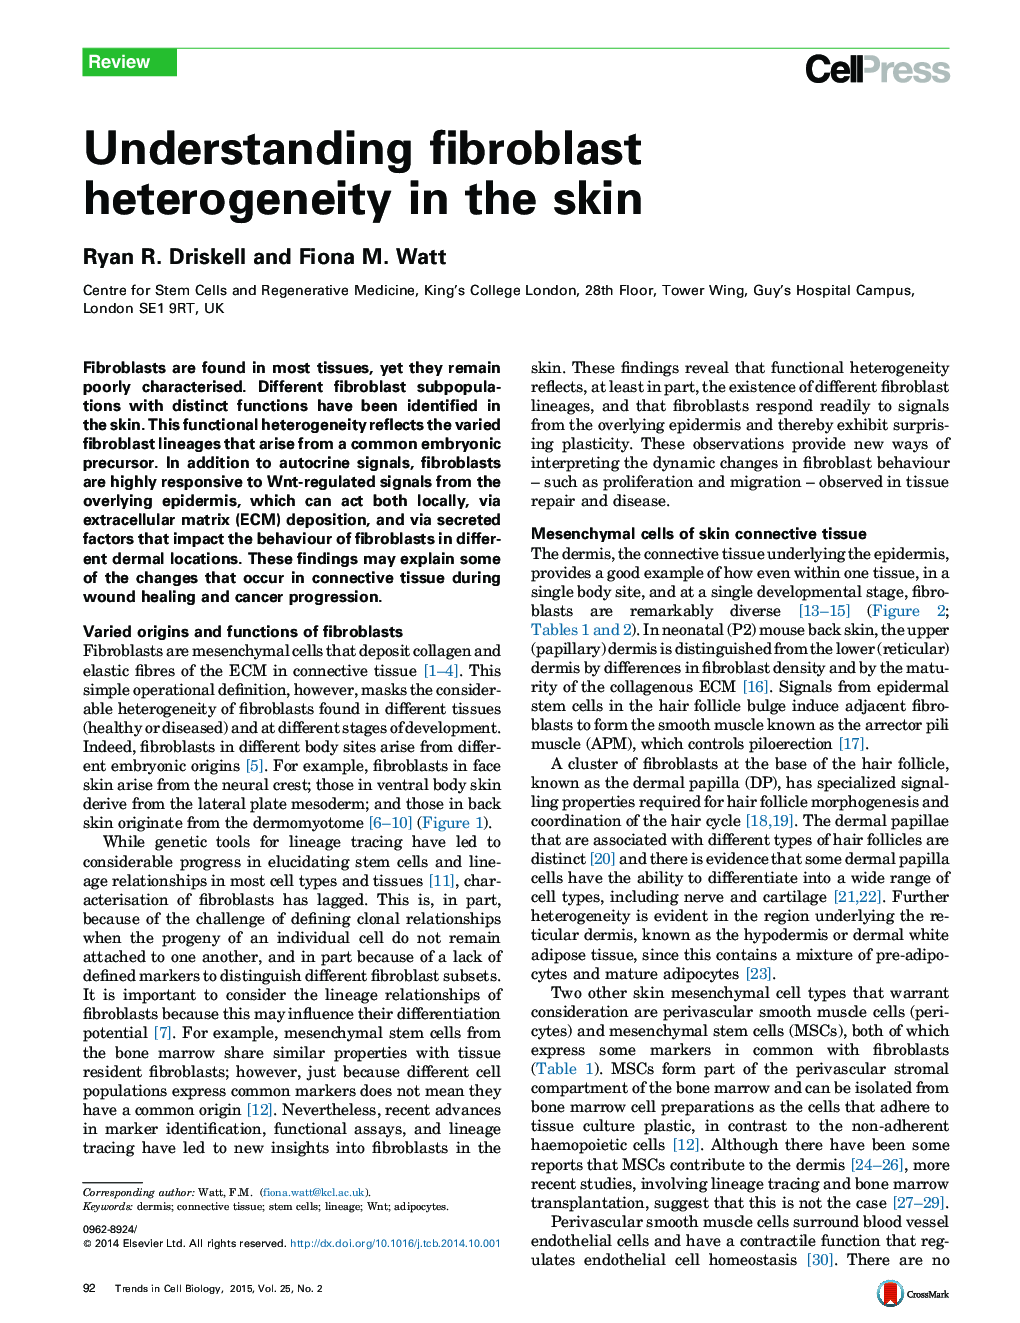 Understanding fibroblast heterogeneity in the skin